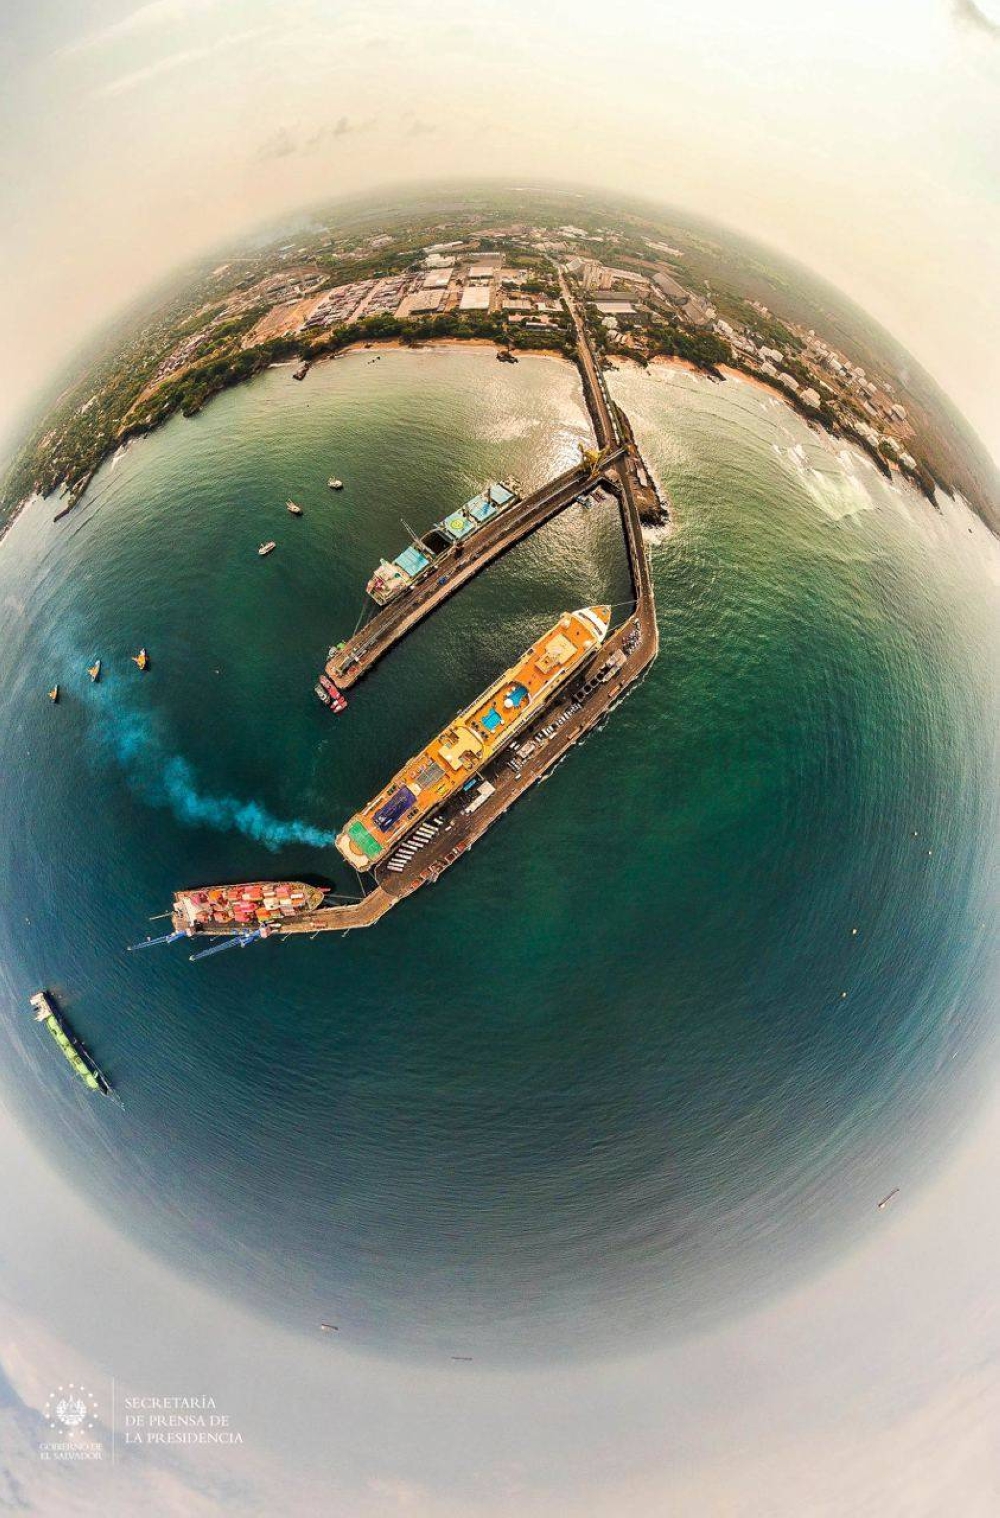 Una vista cenital del arribo del crucero Norwegian Jewel con un lente de ojo pez. /Cortesía Secretaría de Prensa.